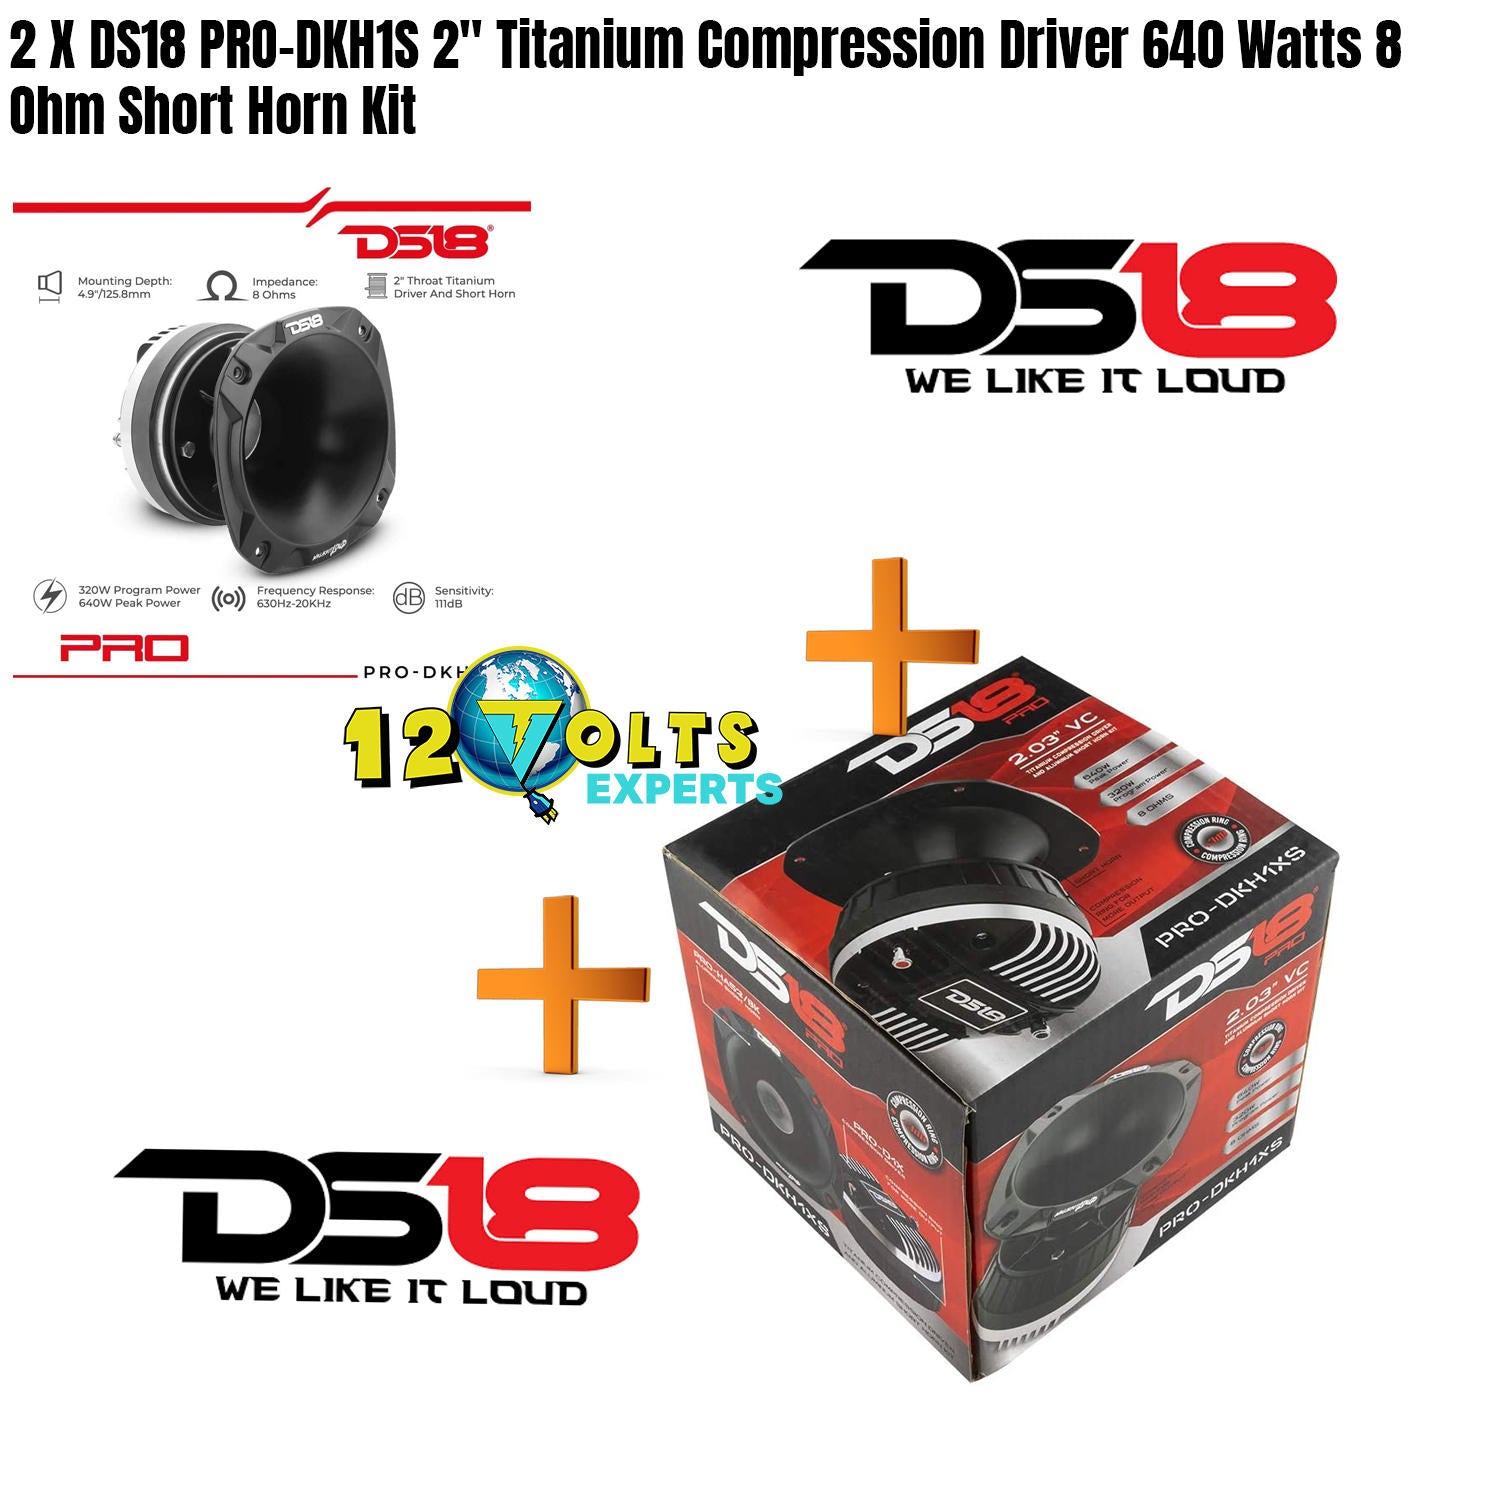 2 X DS18 PRO-DKH1S 2" Titanium Compression Driver 640 Watts 8 Ohm Short Horn Kit